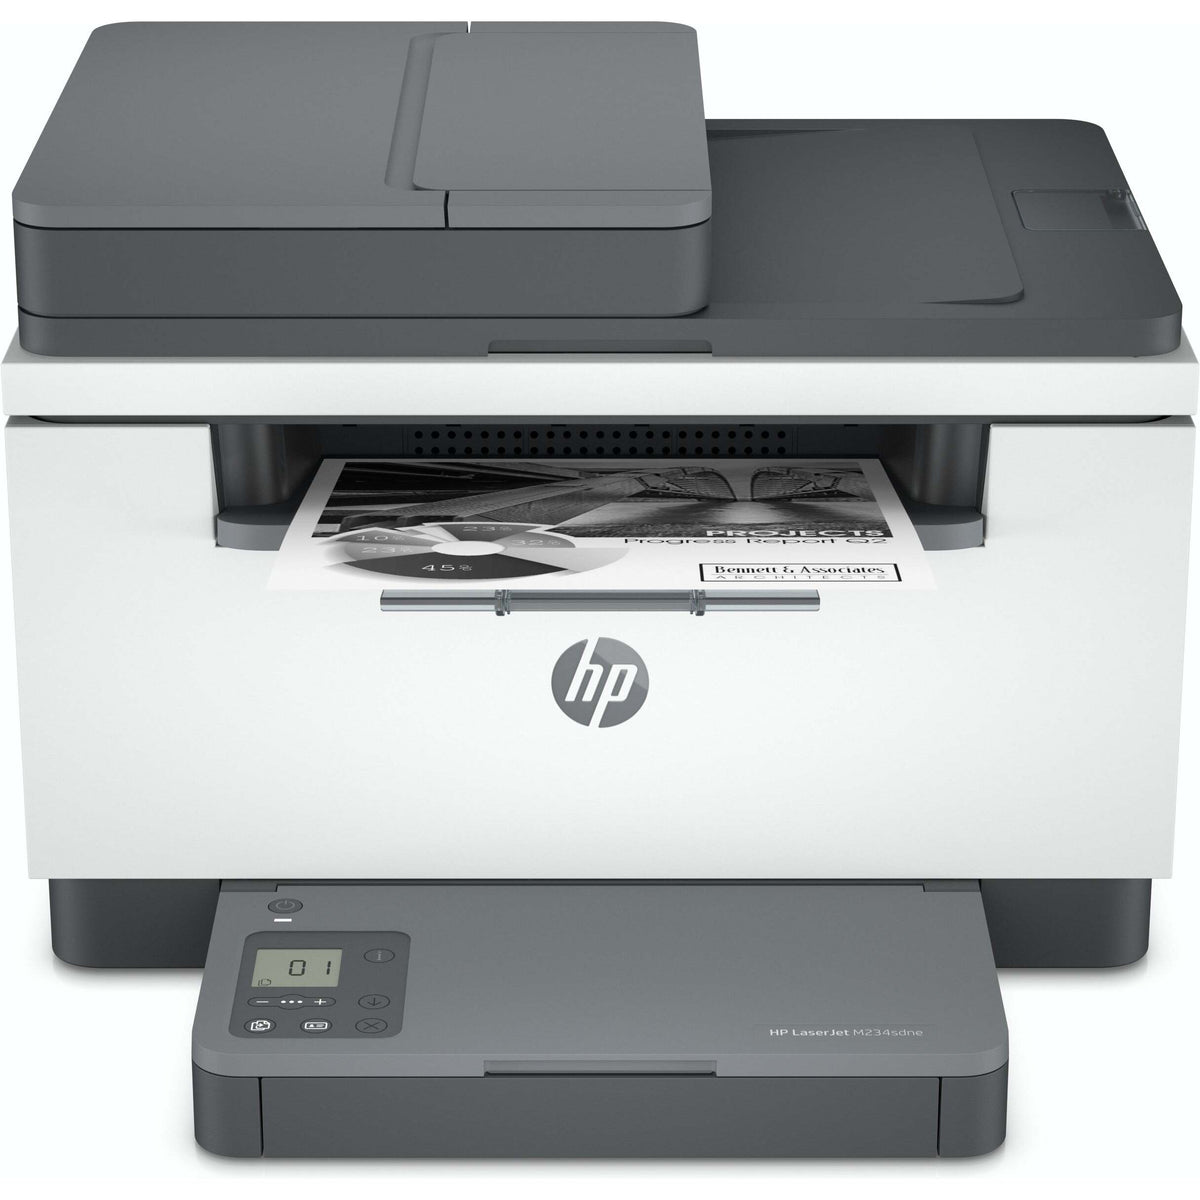 Multifunkční laserová tiskárna HP LaserJet MFP M234sdne